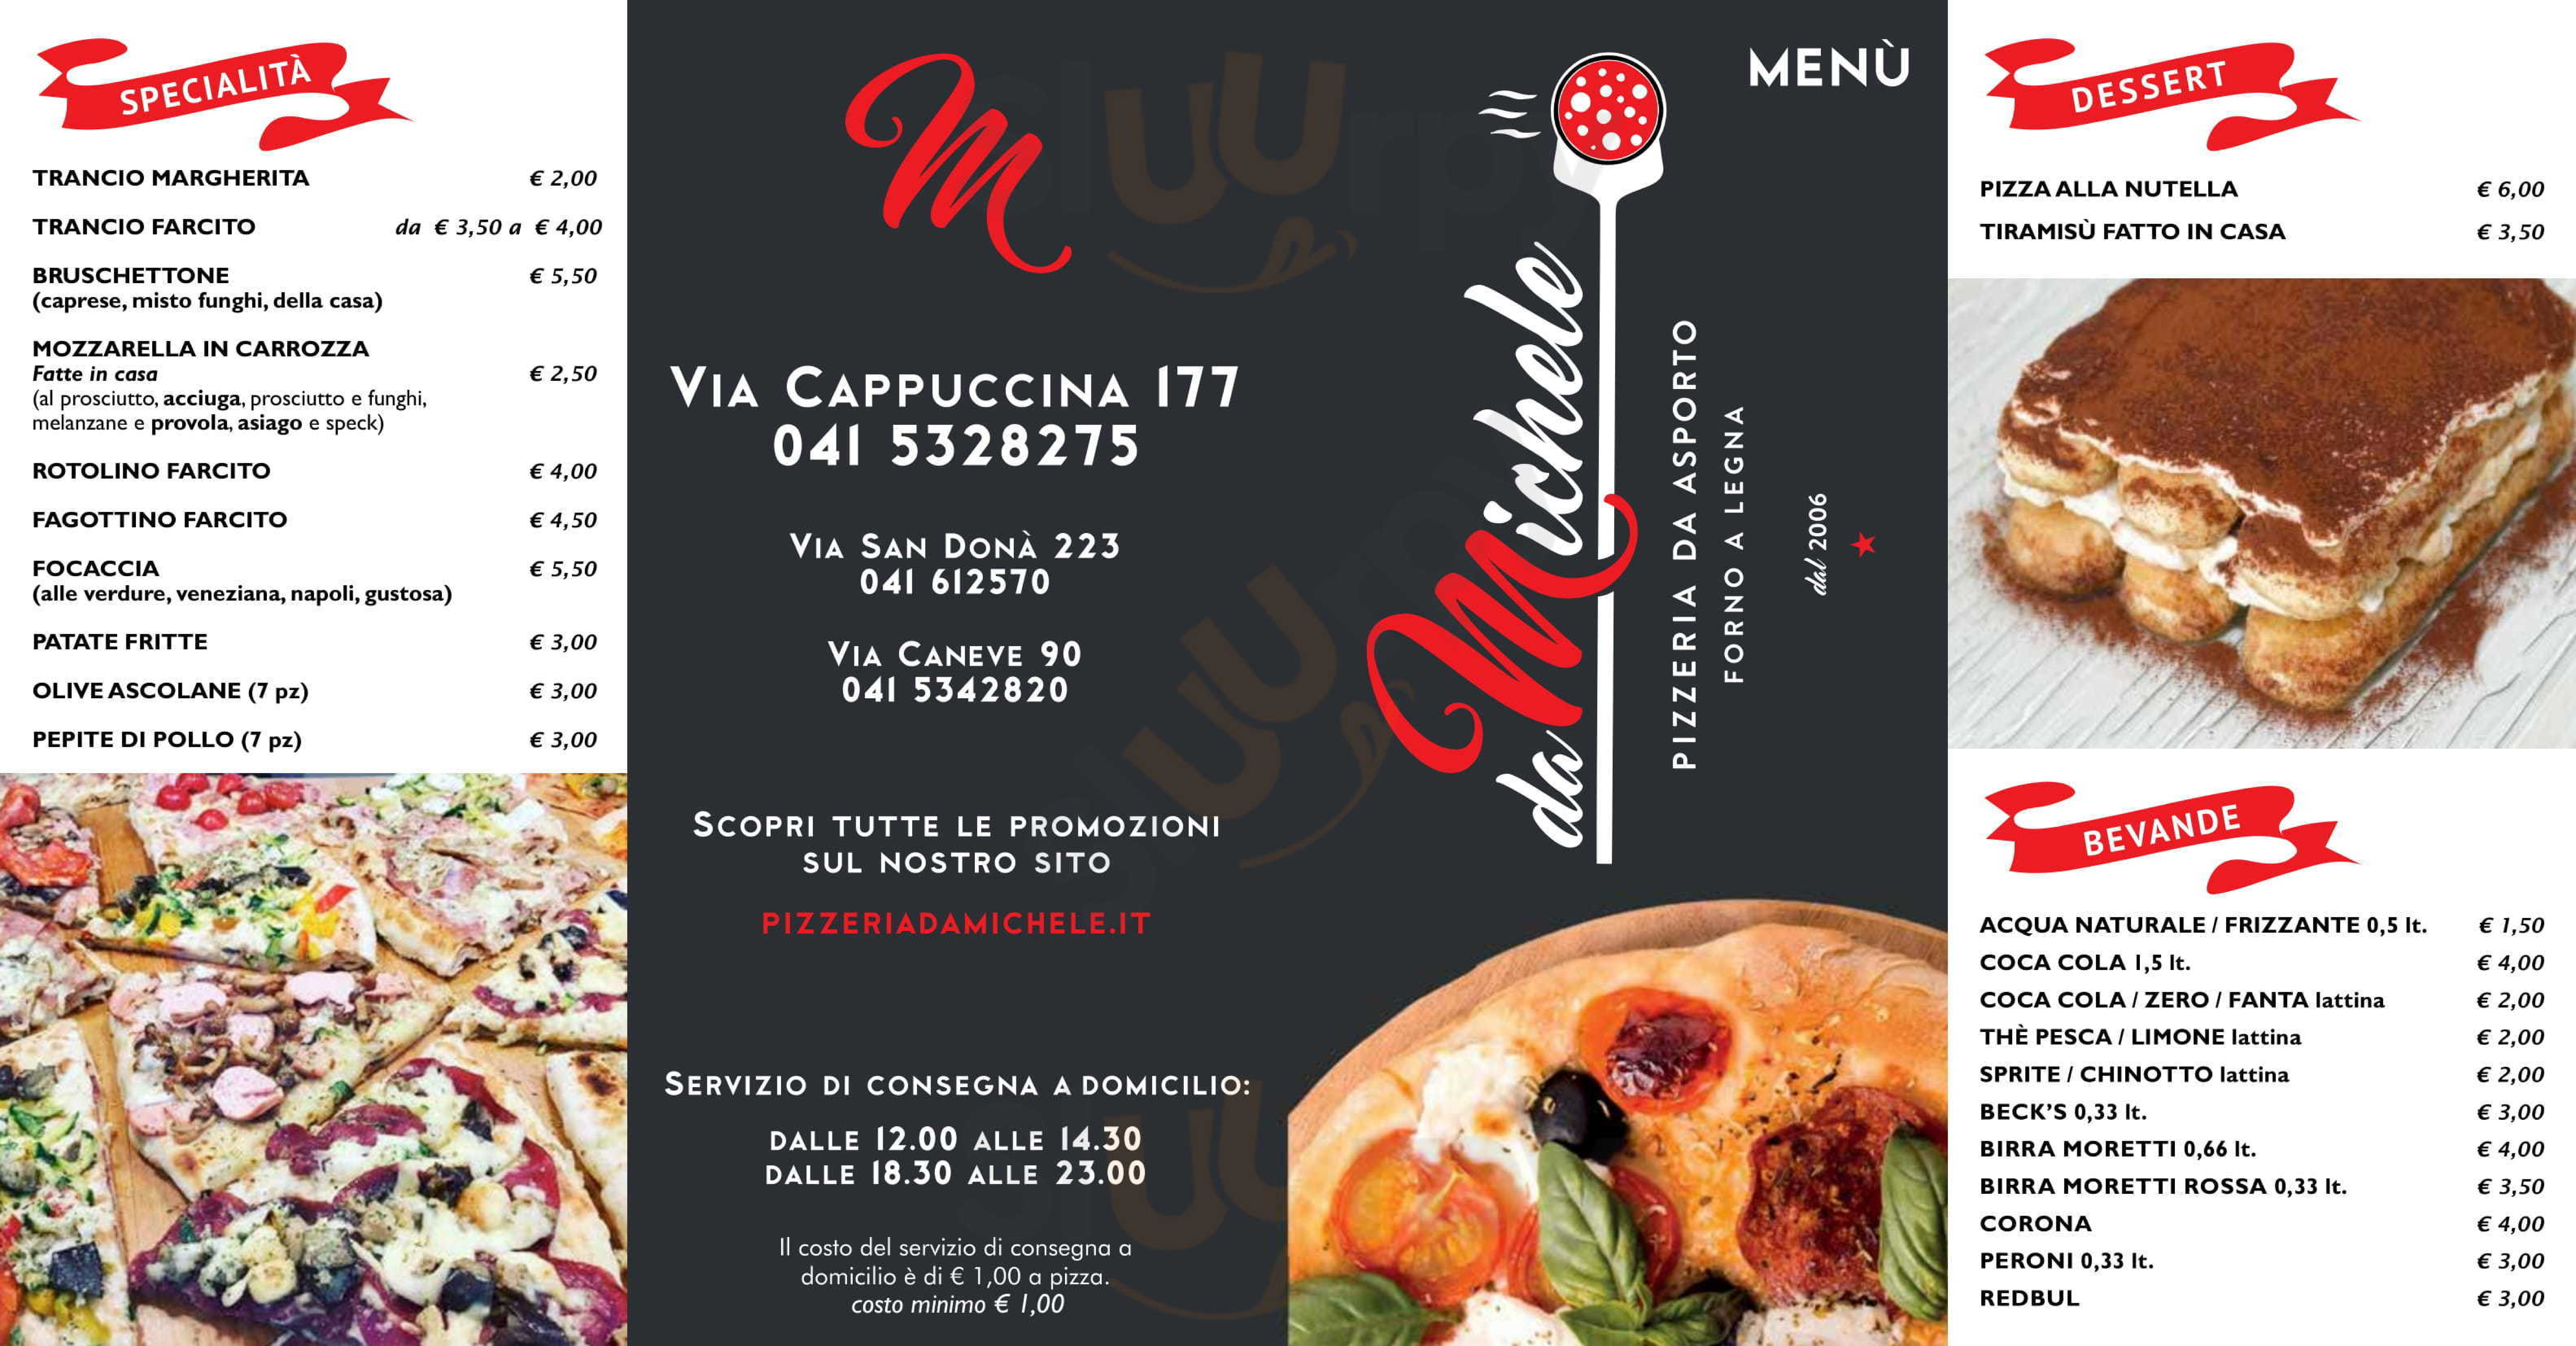 Pizzeria Da Michele Venezia menù 1 pagina